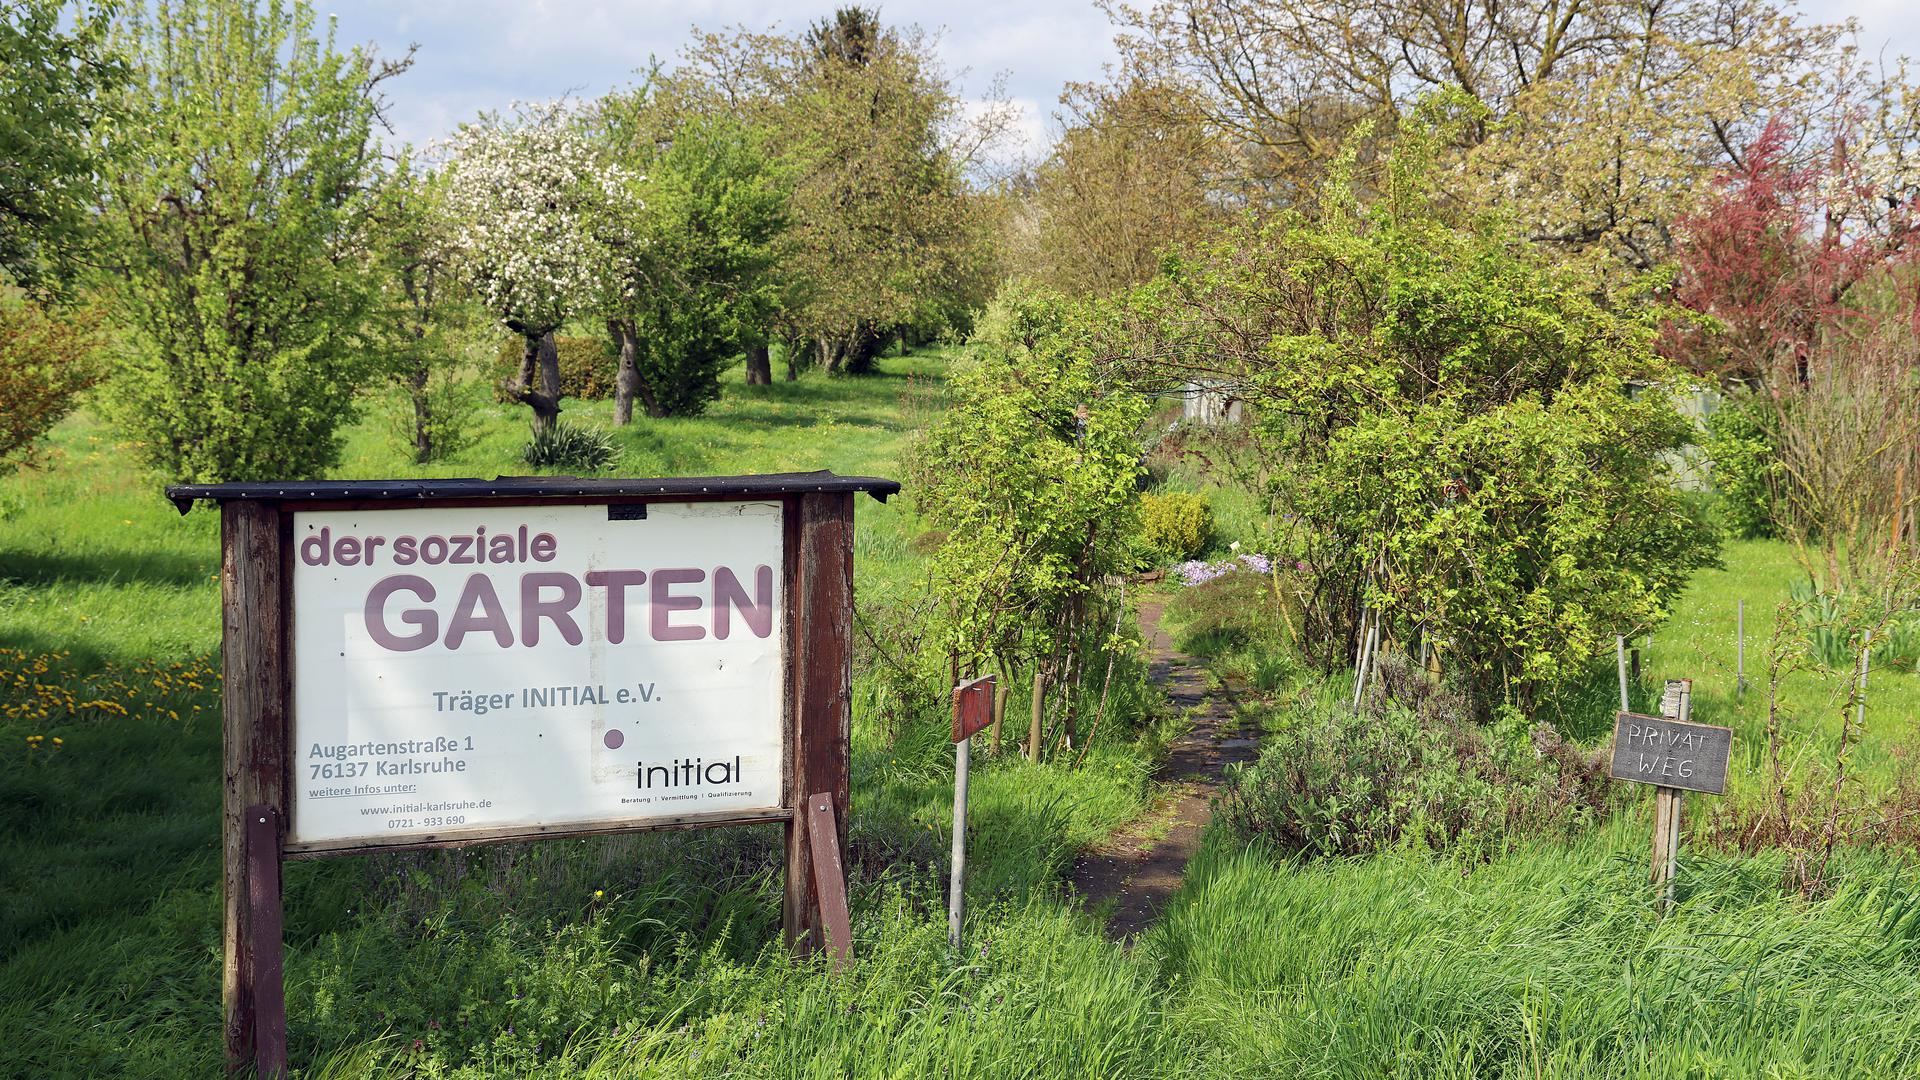 25.04.2023 Sozialer Garten in Wolfartsweier: Es grünt, aber der Trägerverein Initial ist insolvent und existiert nicht mehr.